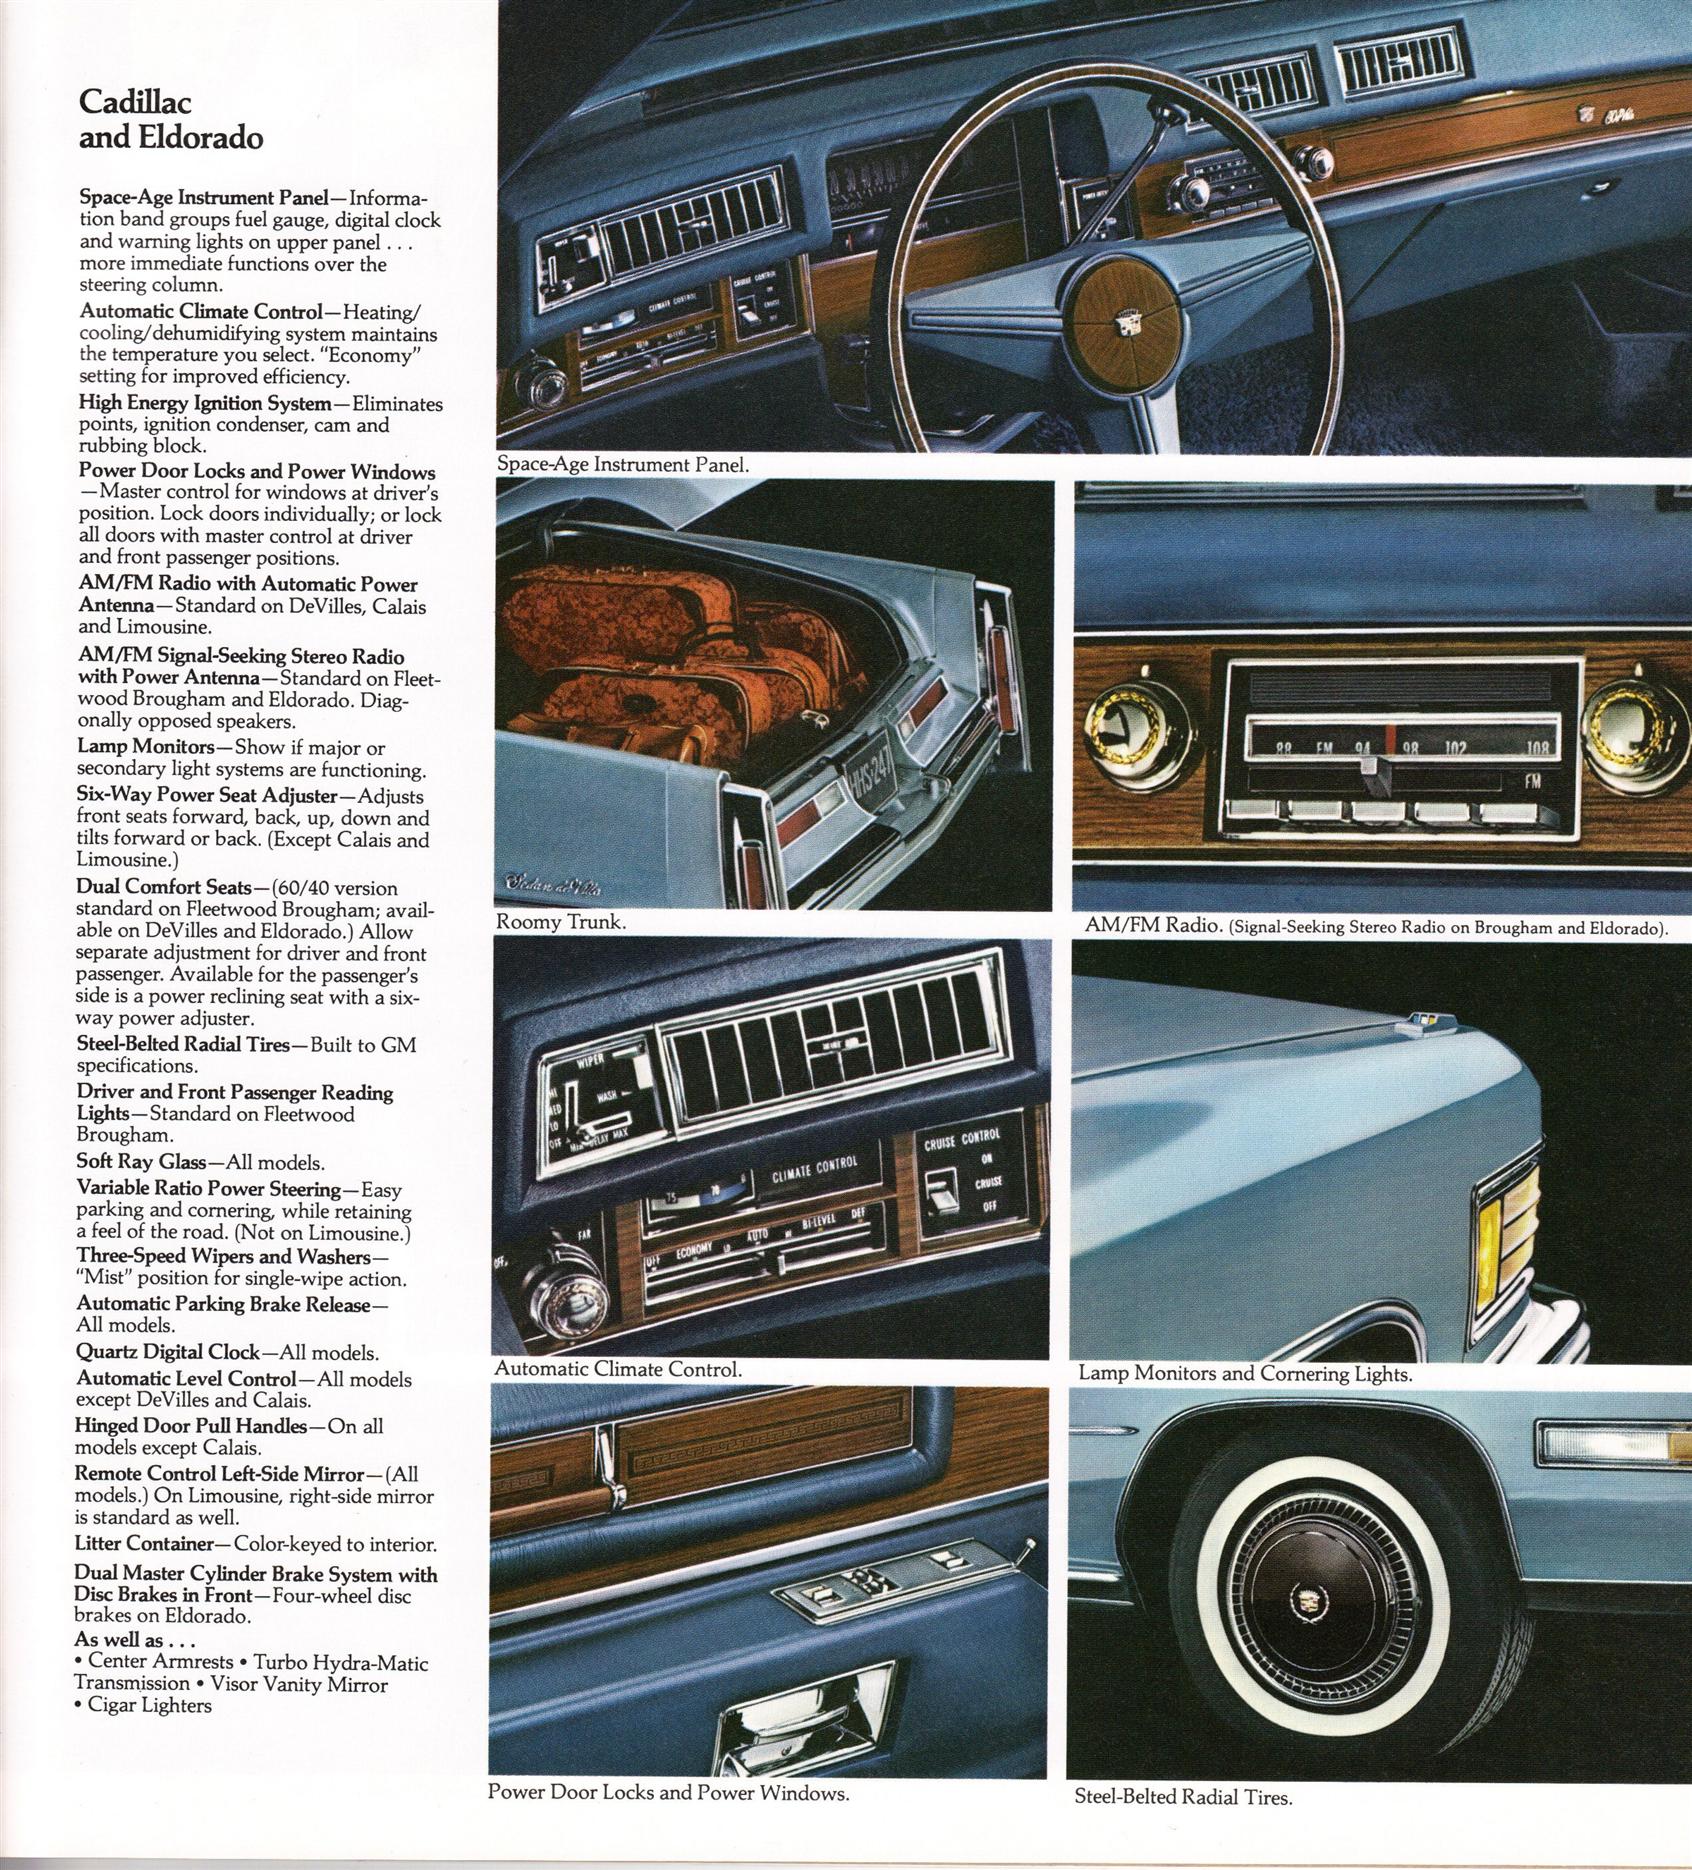 1976 Cadillac pg21